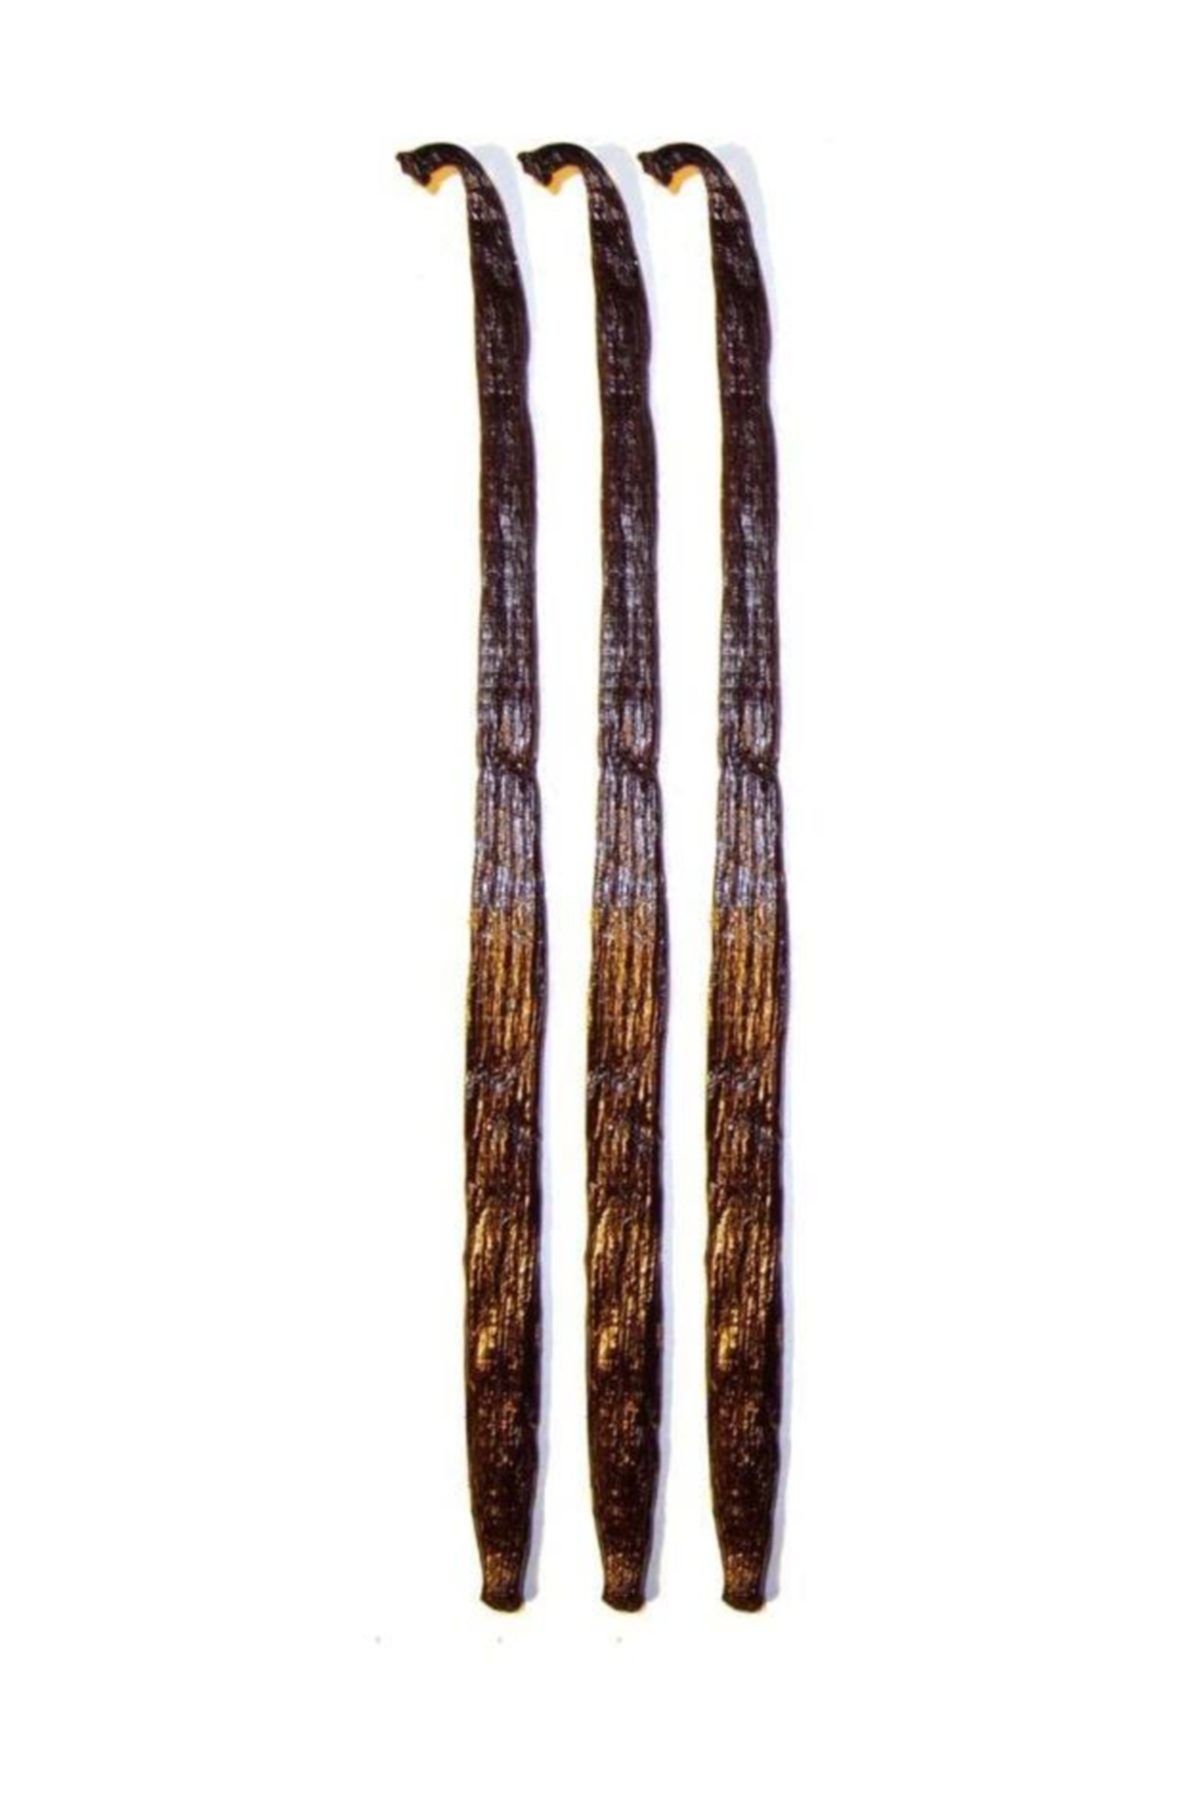 Aktar Diyarı Madagaskar Çubuk Vanilya Çubuğu 14-16 cm  A Kalite 3 Adet 8690000970483